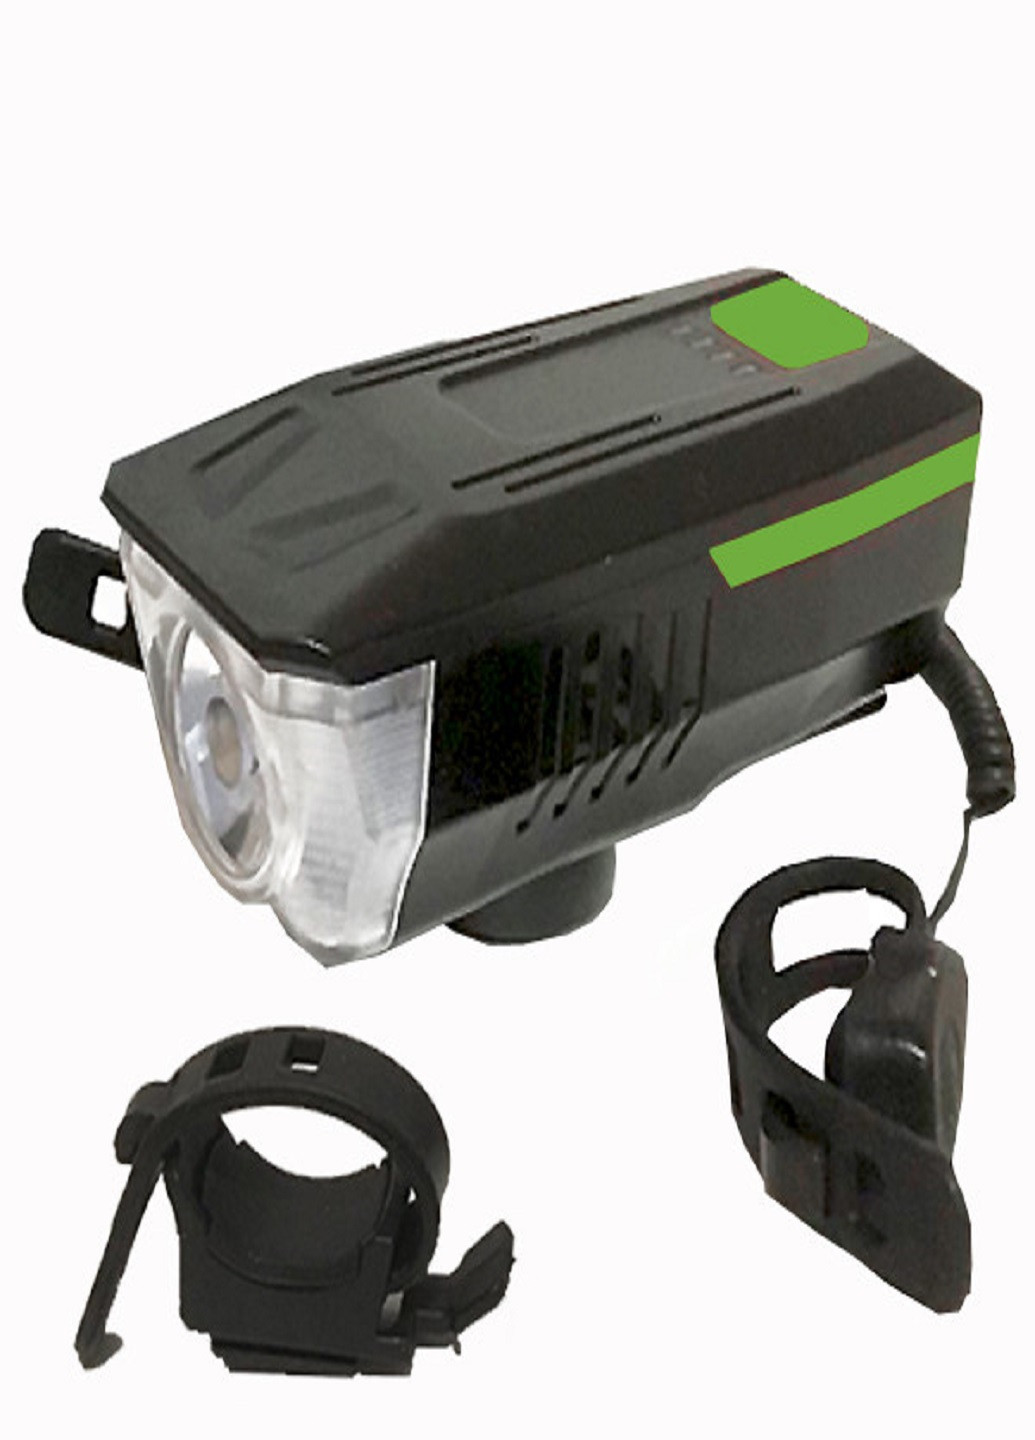 Универсальный аккумуляторный фонарь велосипедный LY-16 влагостойкий со звонком с креплением на руль Зеленый VTech (253499264)